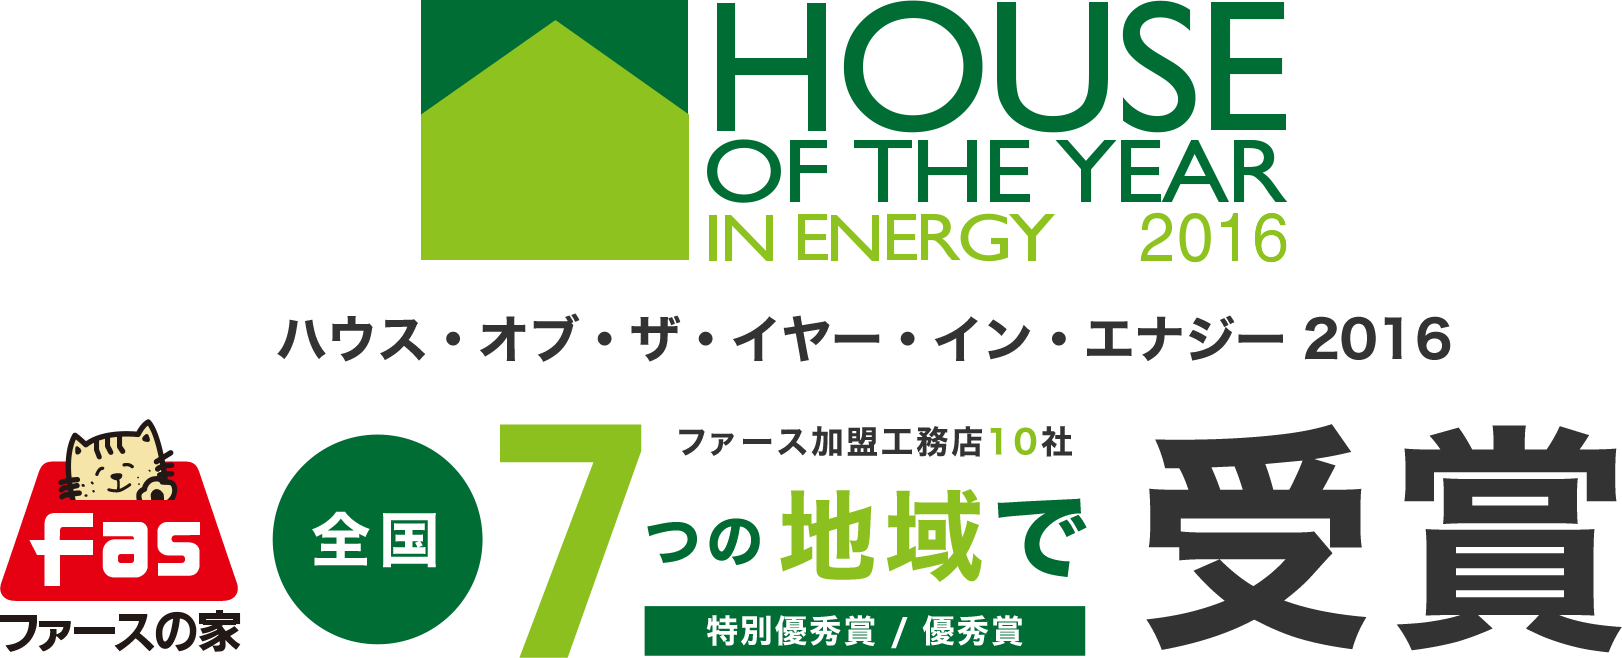 ハウス・オブ・ザ・イヤー・イン・エナジー2016 ファースの家加盟工務店10社 受賞